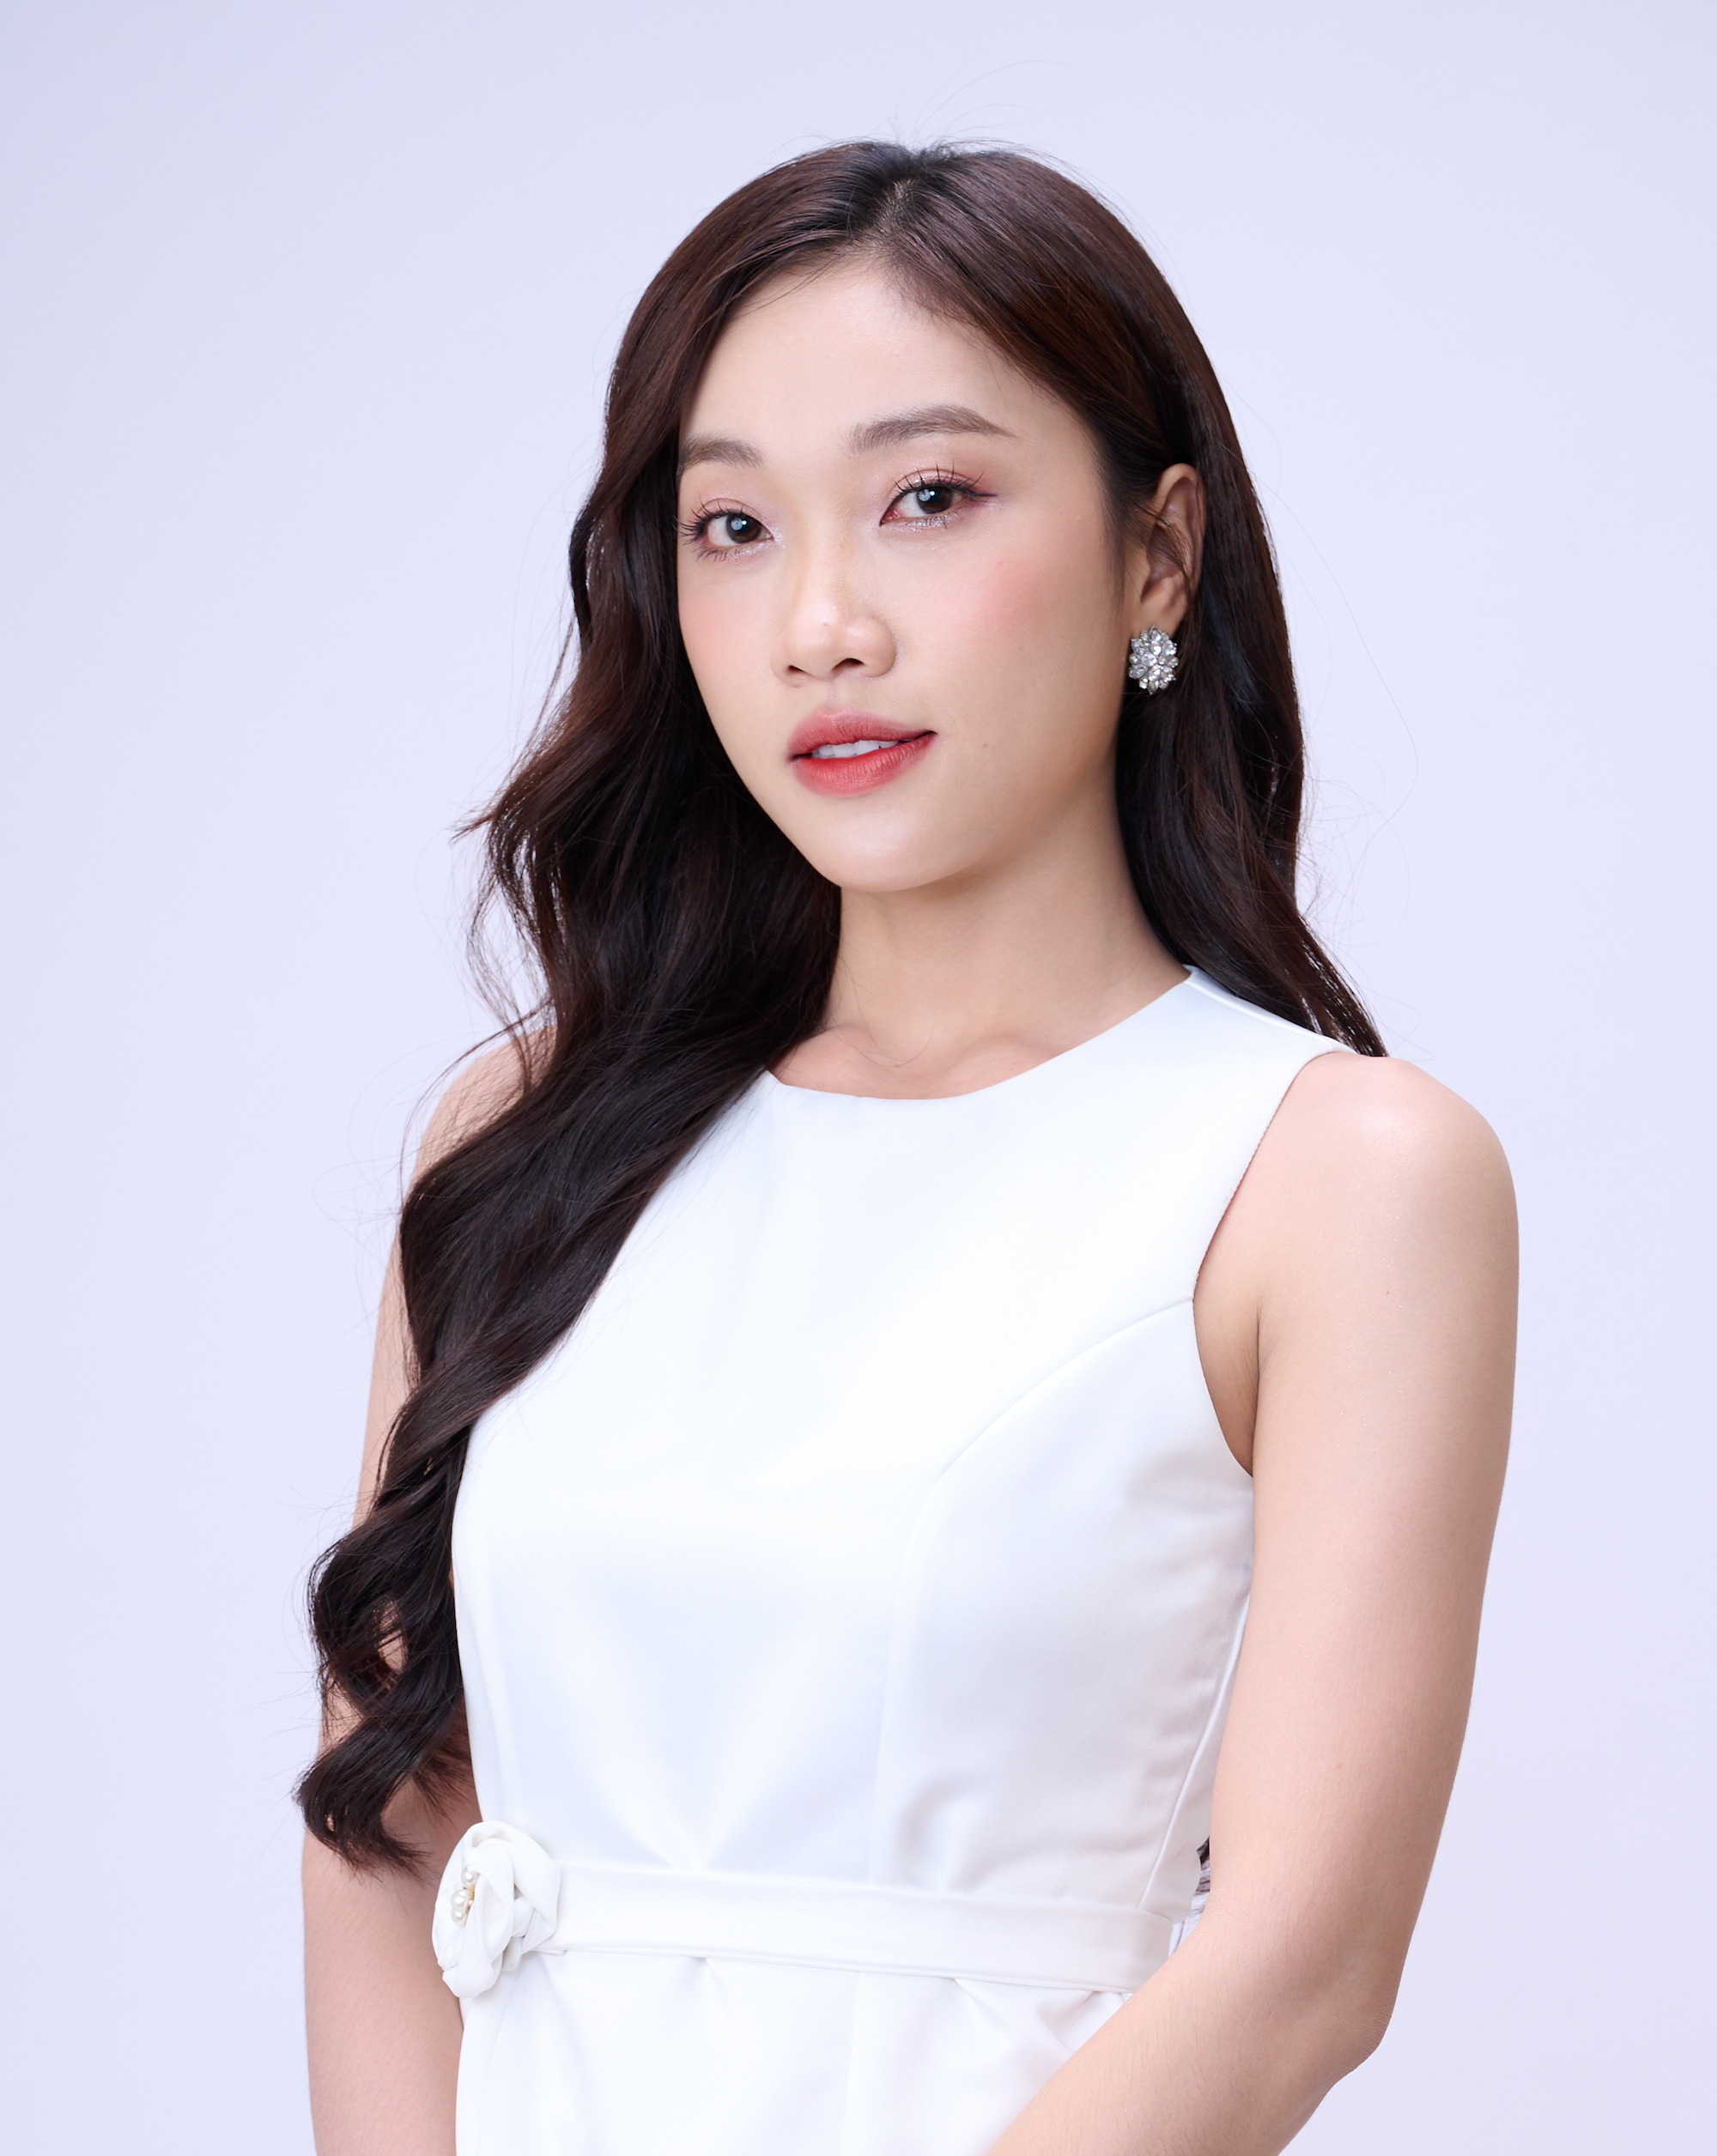 Nhan sắc người đẹp 'Miss World Vietnam' đóng nữ chính phim Tình đầu - Ảnh 1.